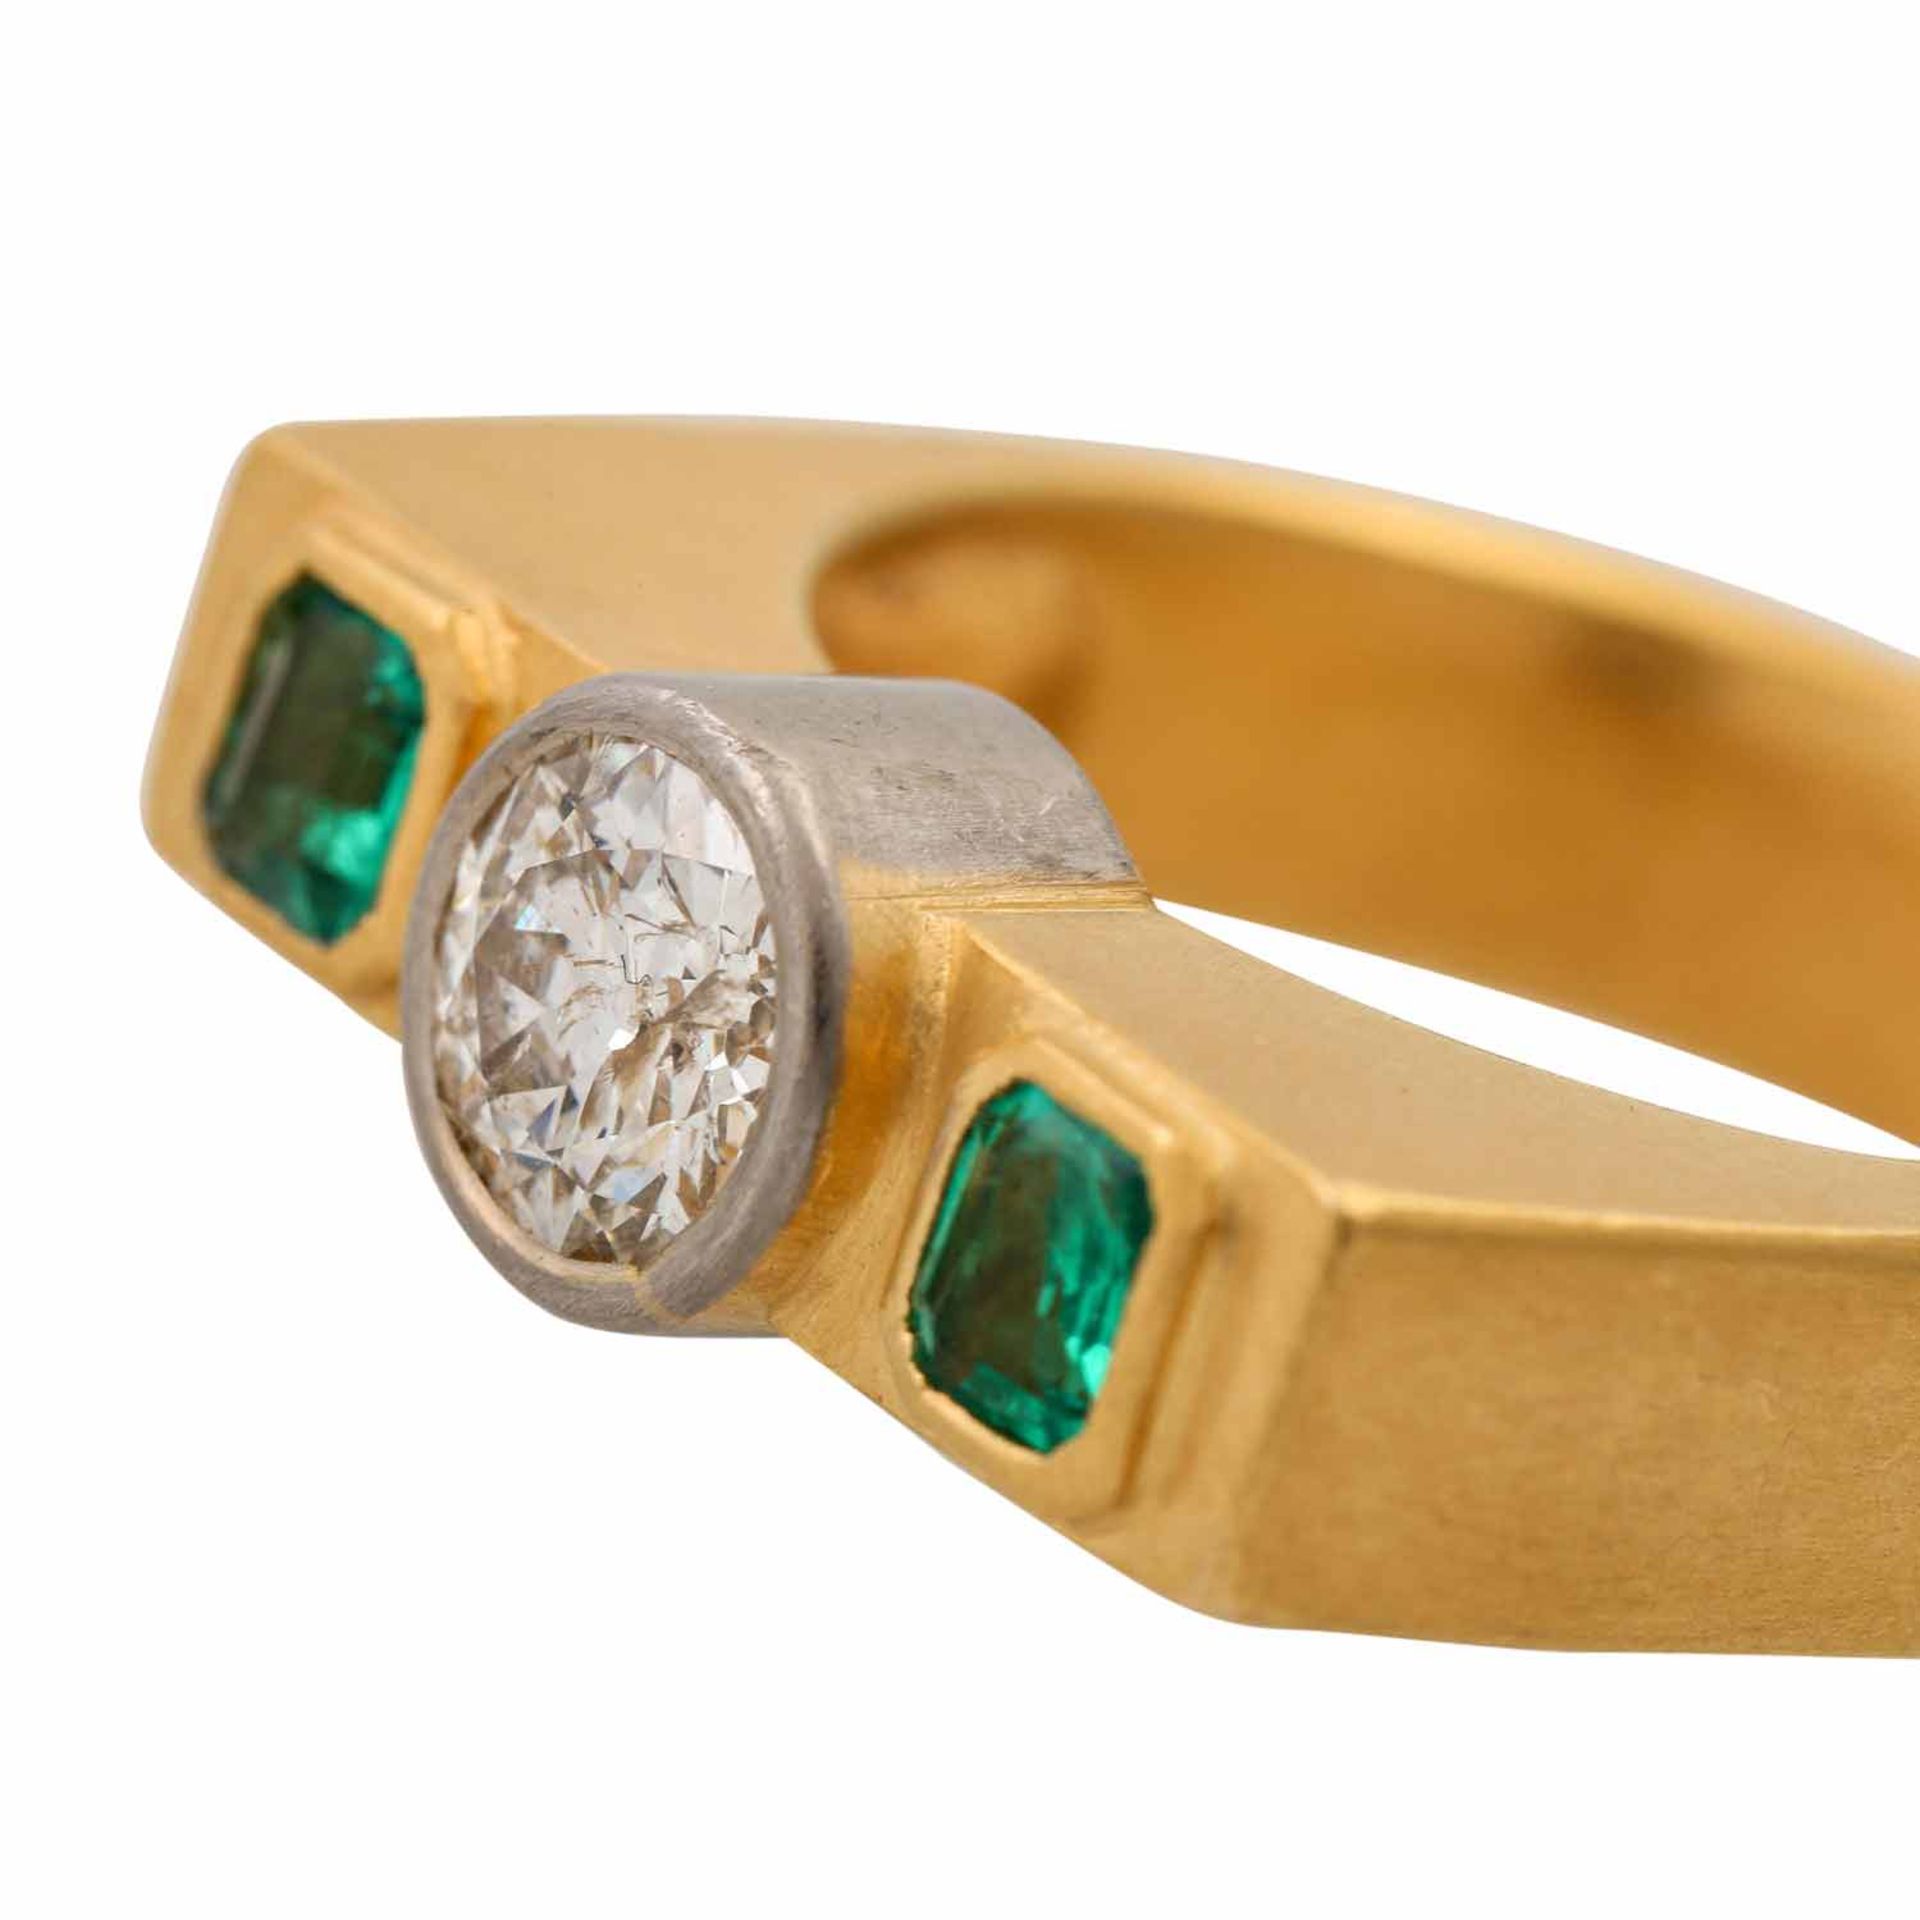 Massiver Ring mit Smaragden und Altschliffdiamantvon ca. 1 ct, ca. GW (K)/P1-2, seitl. - Image 5 of 5